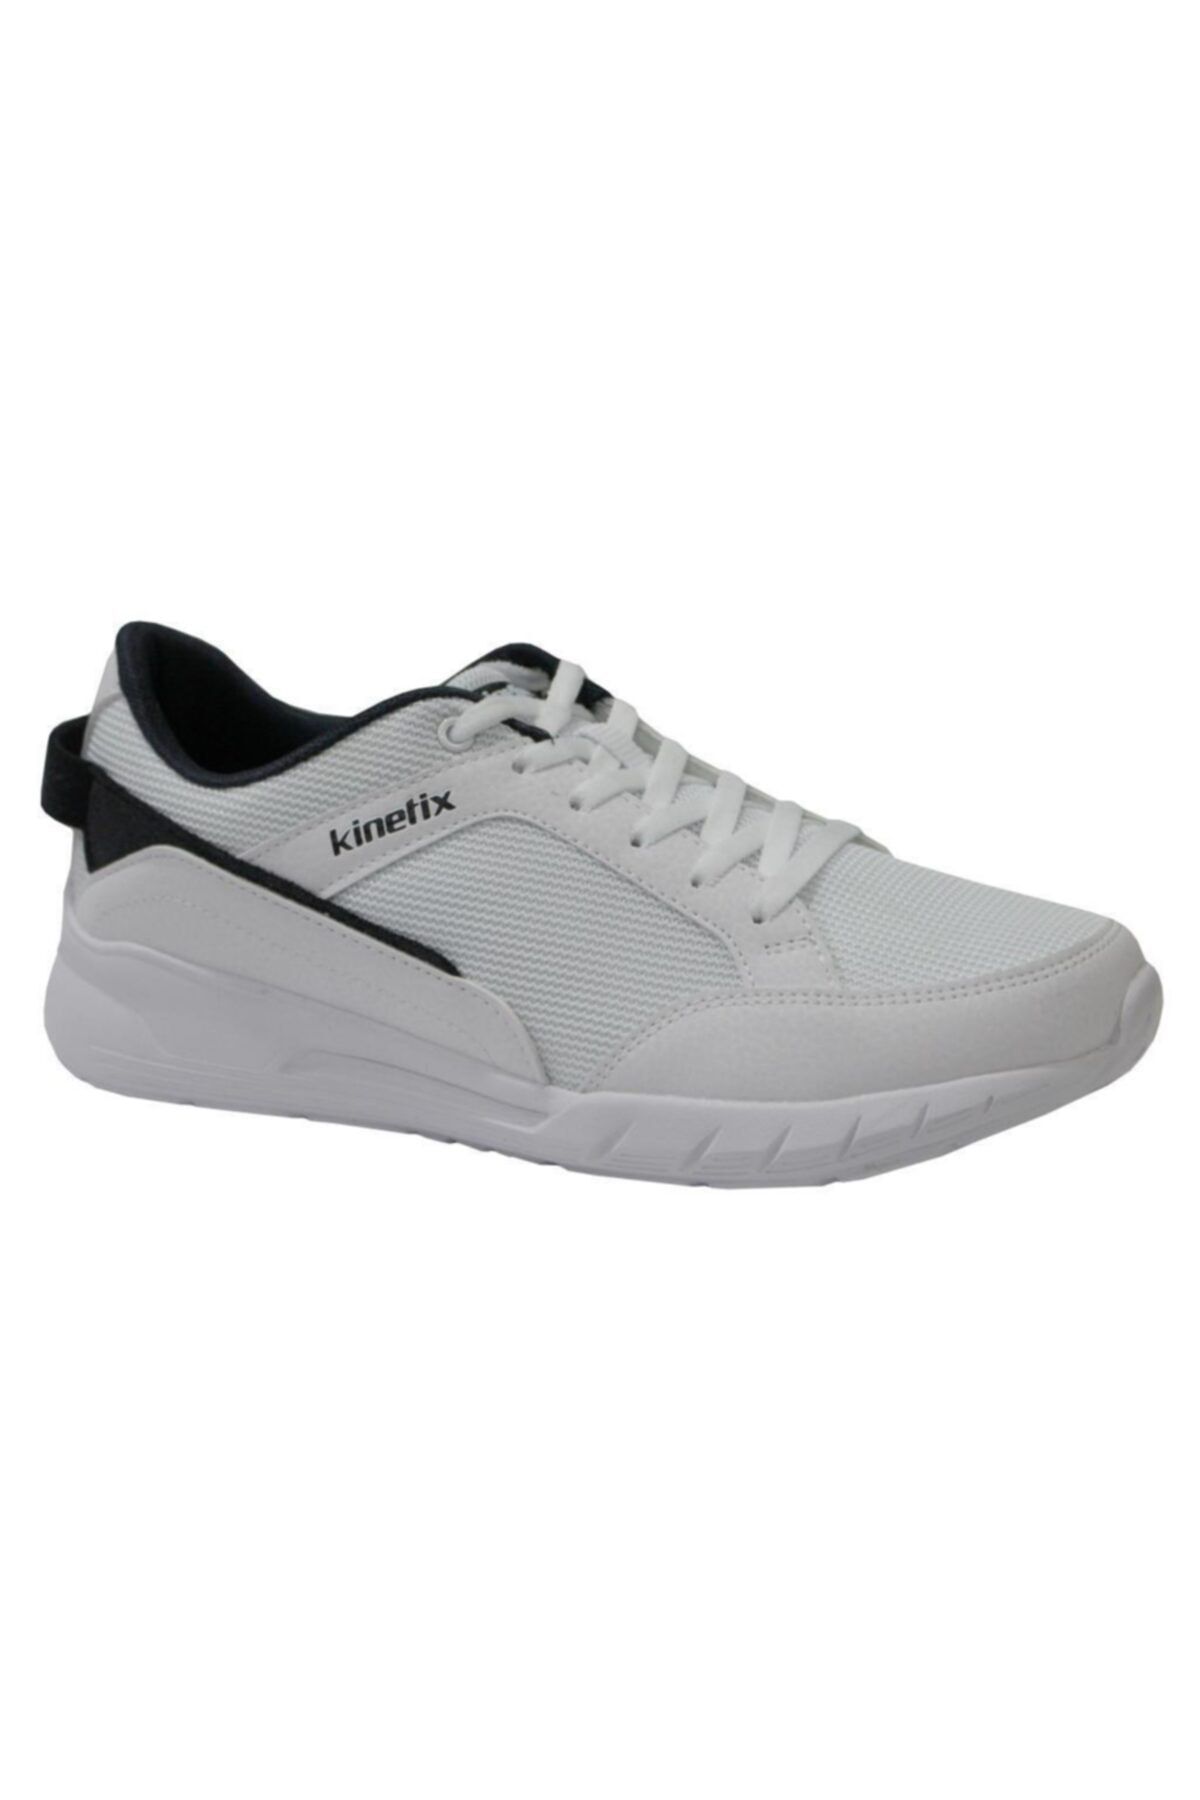 Kinetix BAGGIO M Beyaz Erkek Sneaker Ayakkabı 100483046